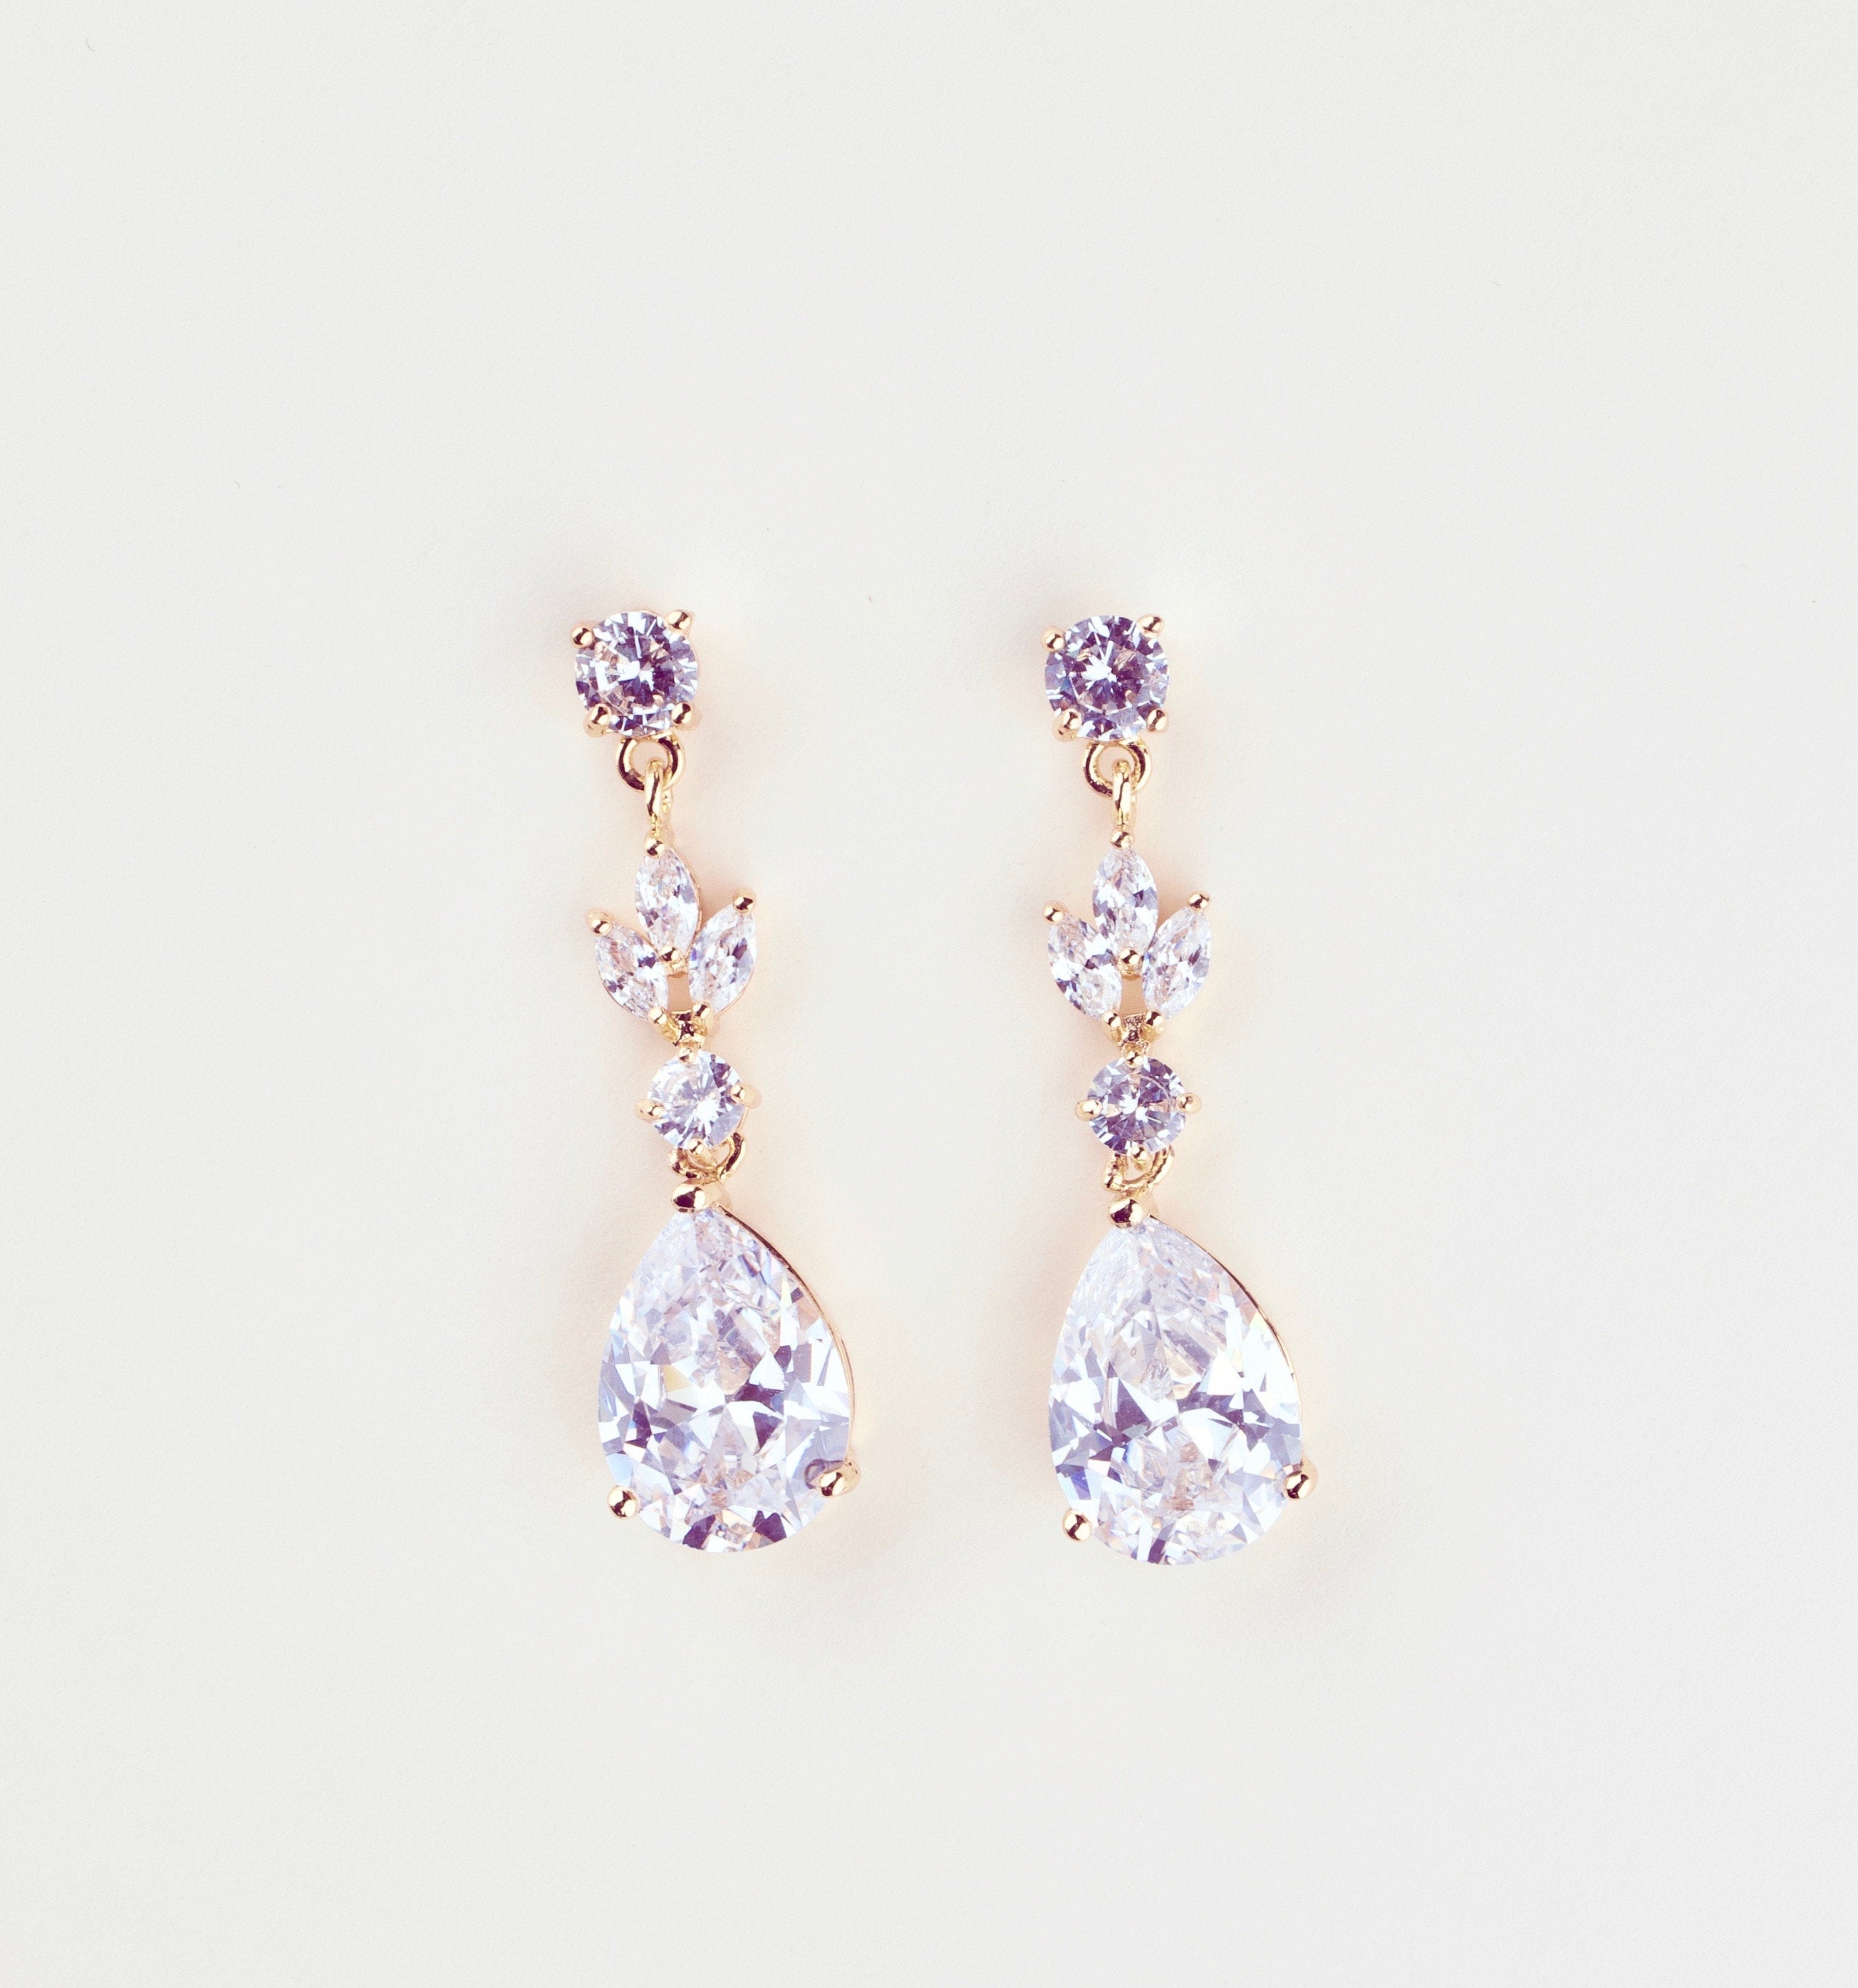 Crystal Bridal Earrings Drop Earrings Wedding Earrings Wedding Jewelry Crystal Tea drop Earrings Bridesmaids earrings Bridesmaids gift